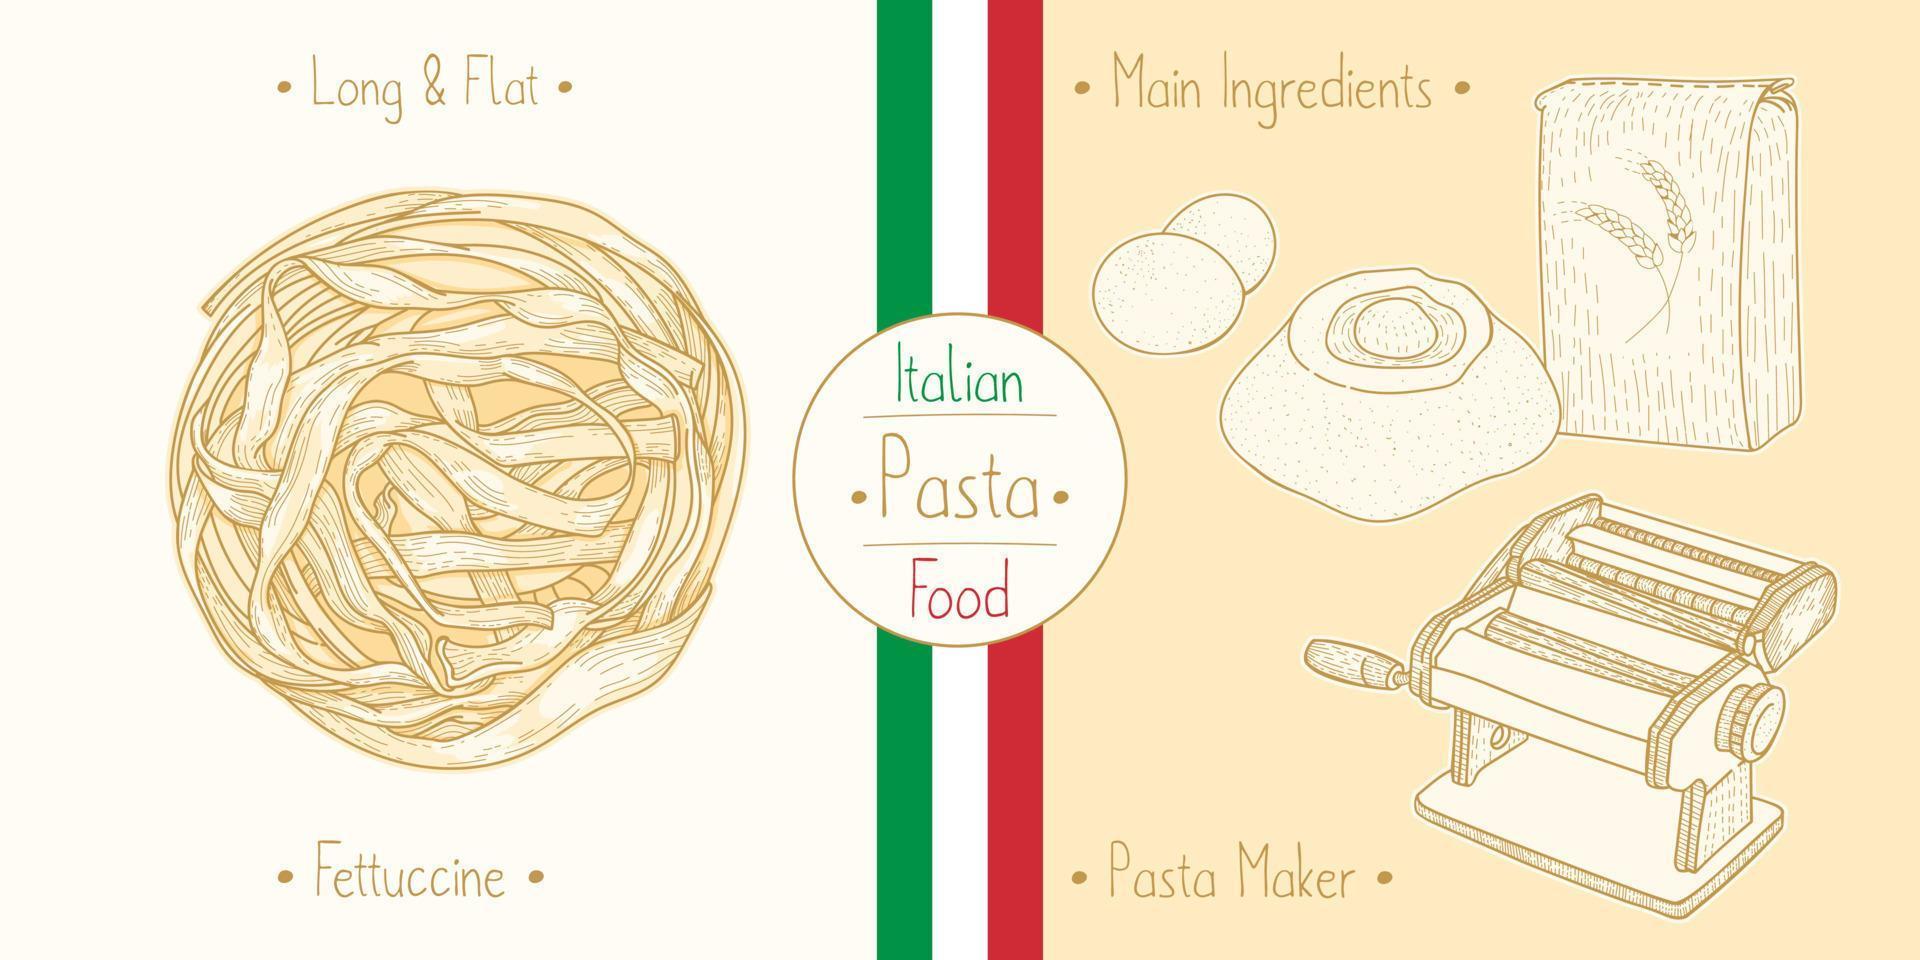 cuisson des pâtes fettuccine italiennes et des ingrédients principaux et de l'équipement des fabricants de pâtes, esquisse d'illustration dans un style vintage vecteur